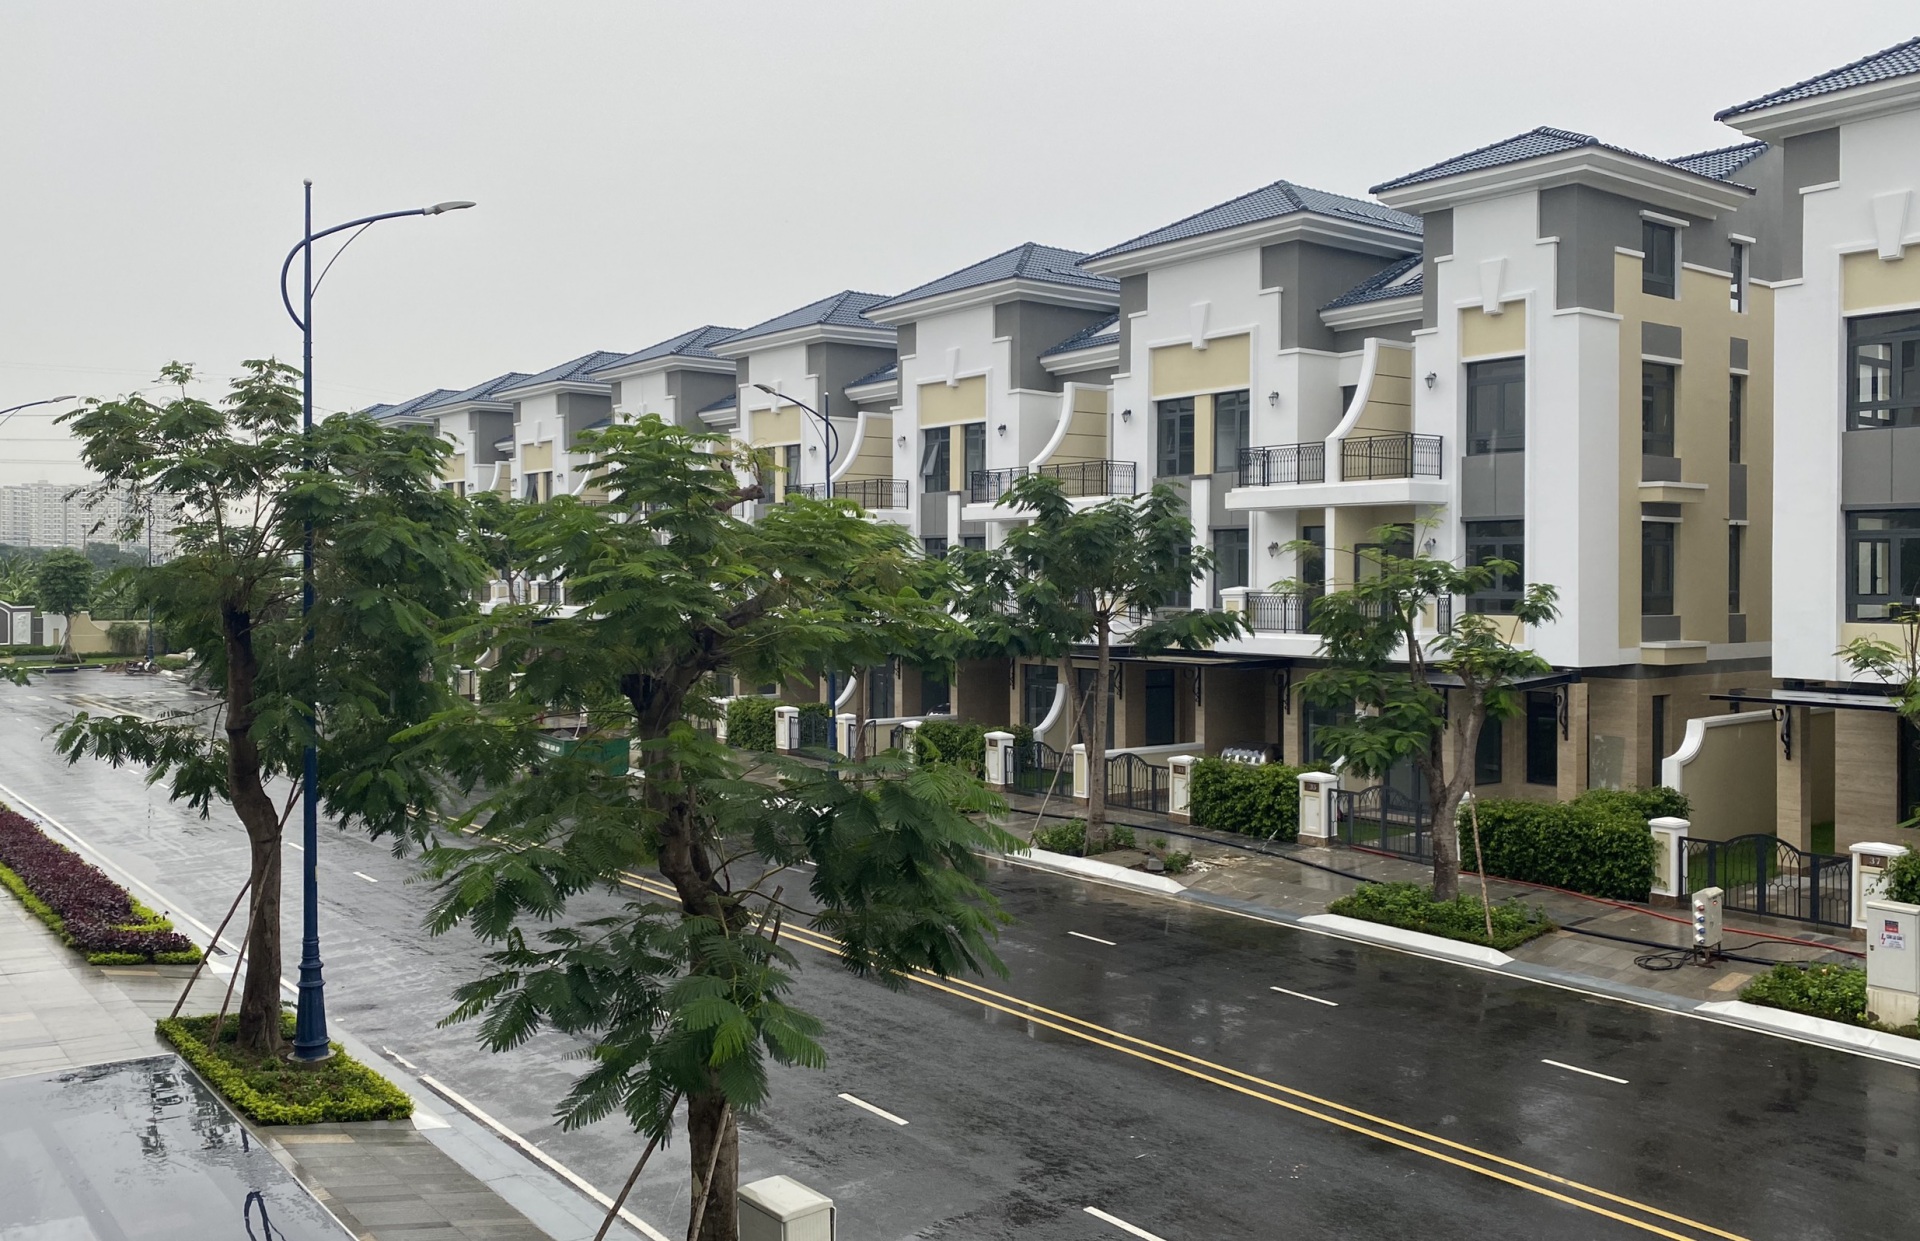 Quận 9 - TP. Hồ Chí Minh: Đại gia bất động sản được chuyển mục đích sử dụng đất hàng loạt dự án phát triển nhà ở không thông qua đấu giá, đấu thầu (Kỳ 4)